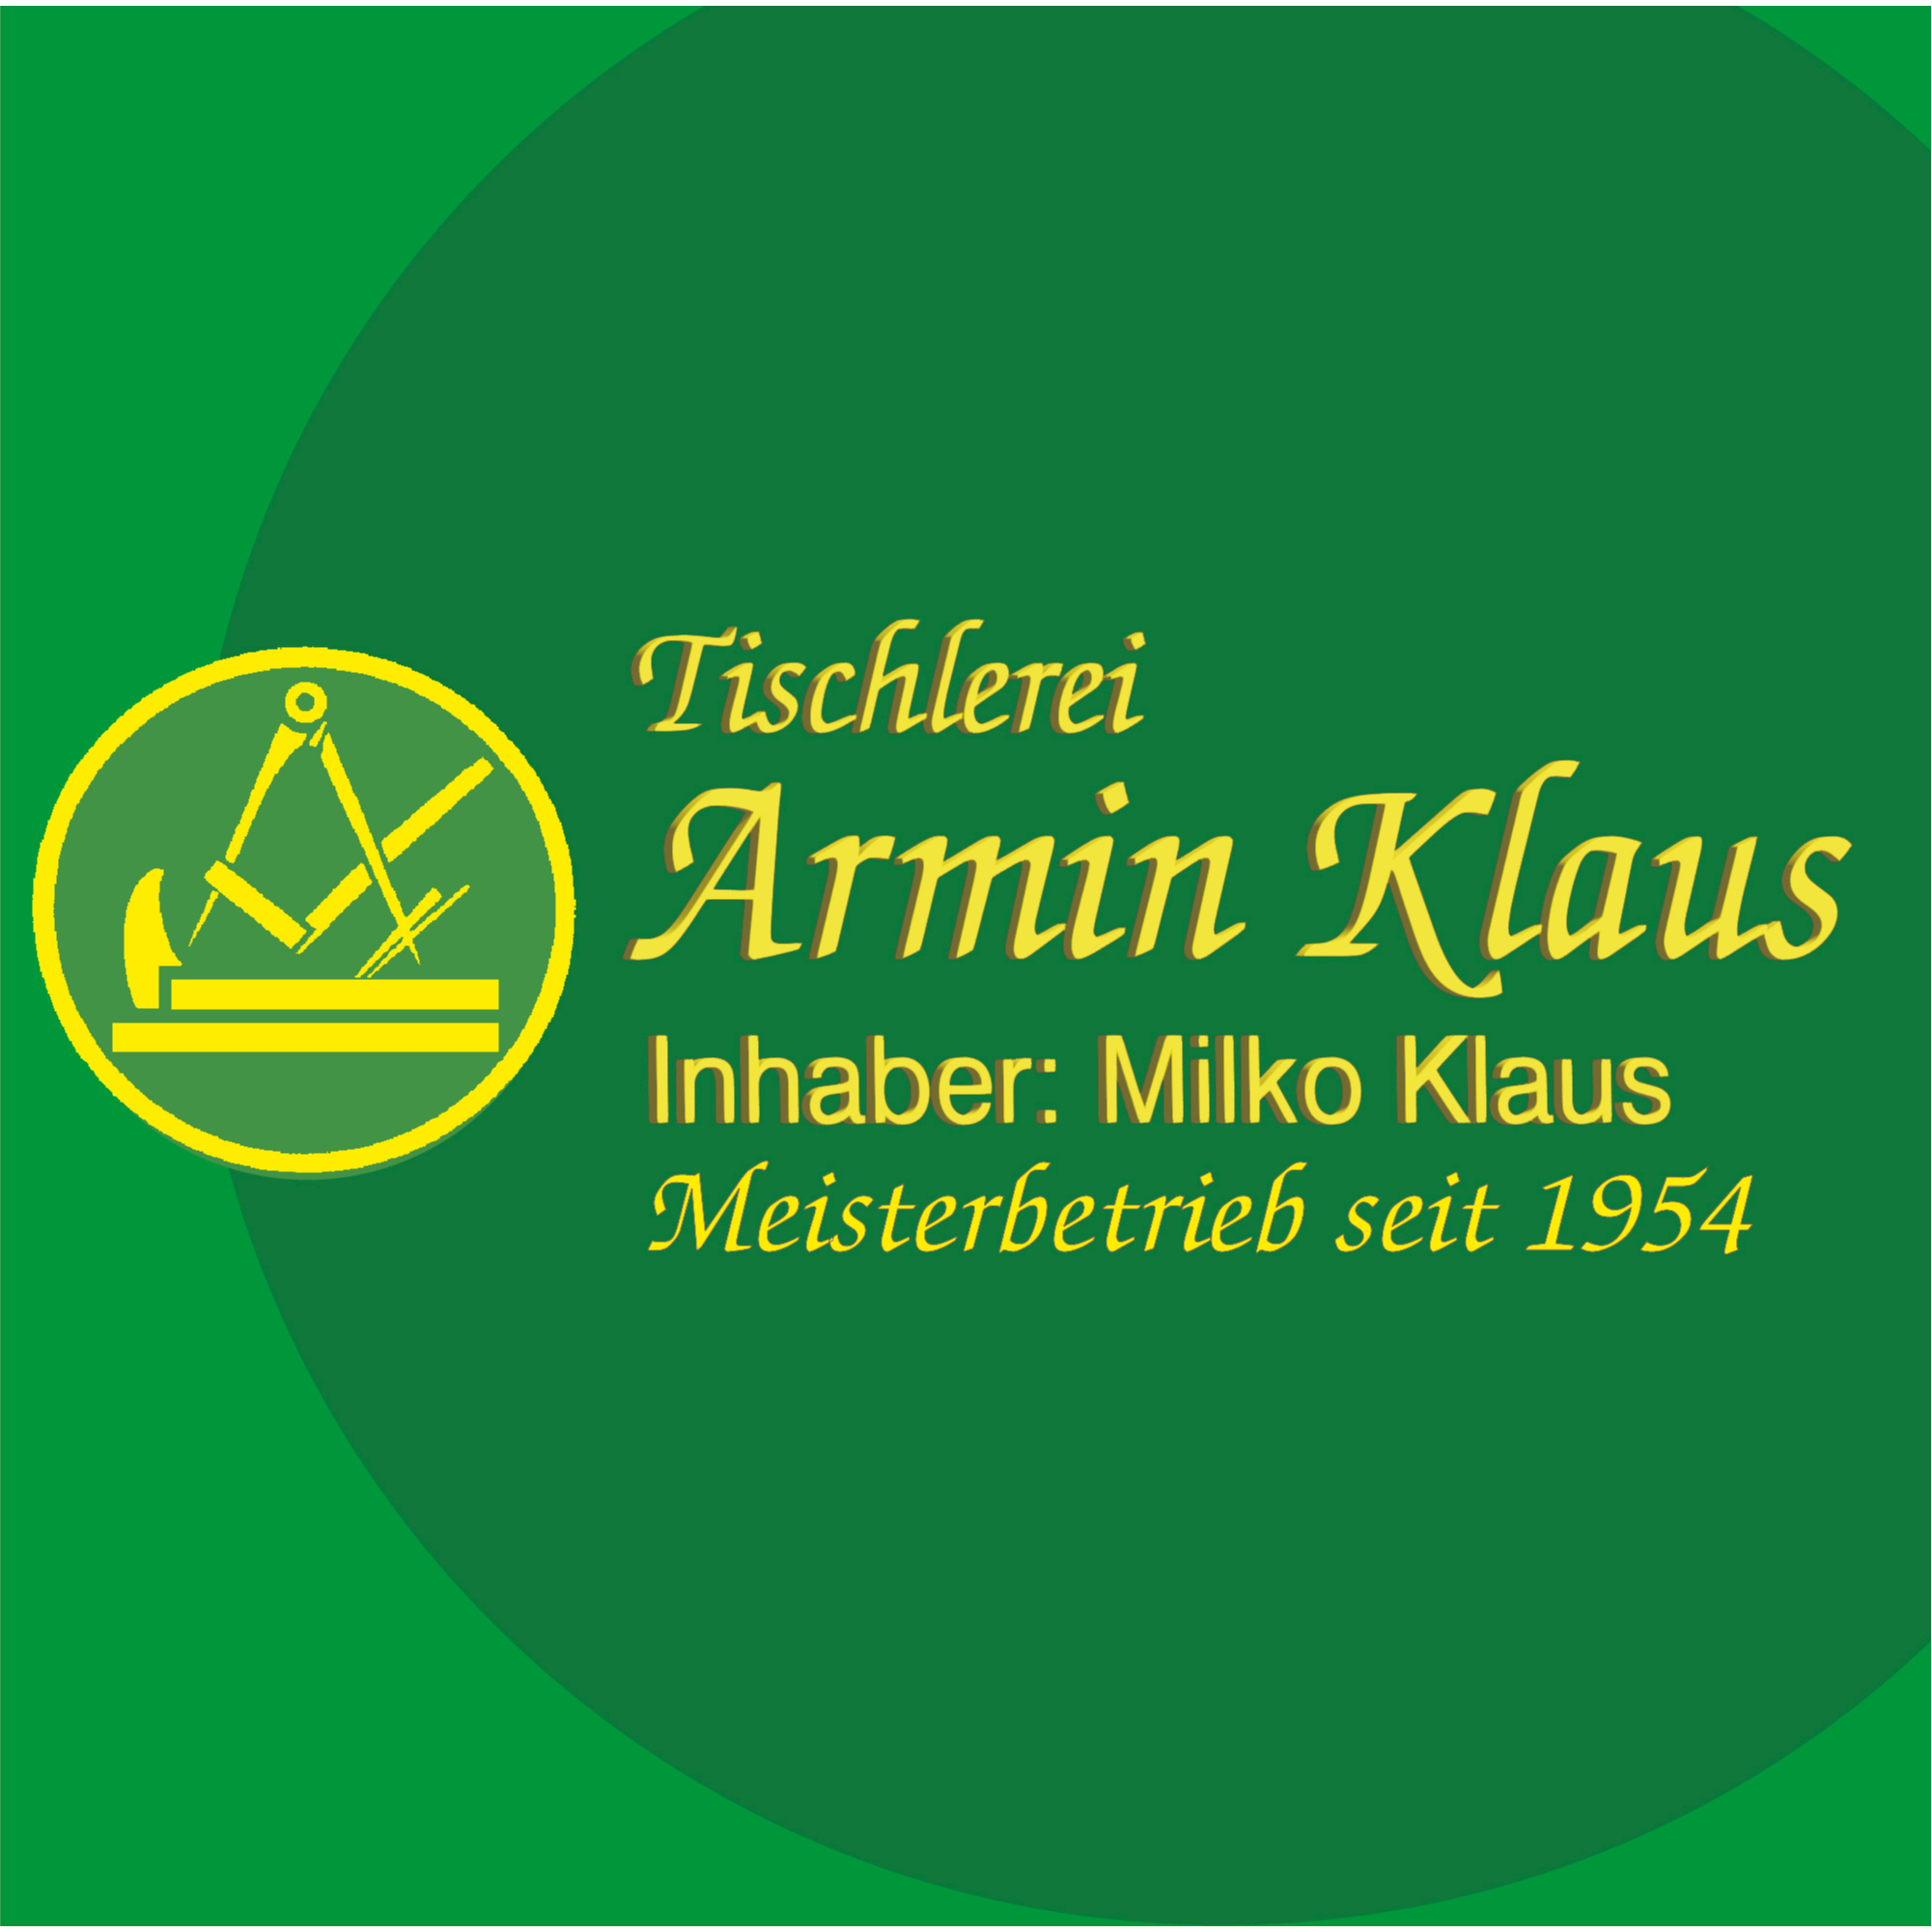 Tischlerei Armin Klaus Inh. Milko Klaus in Zwickau - Logo